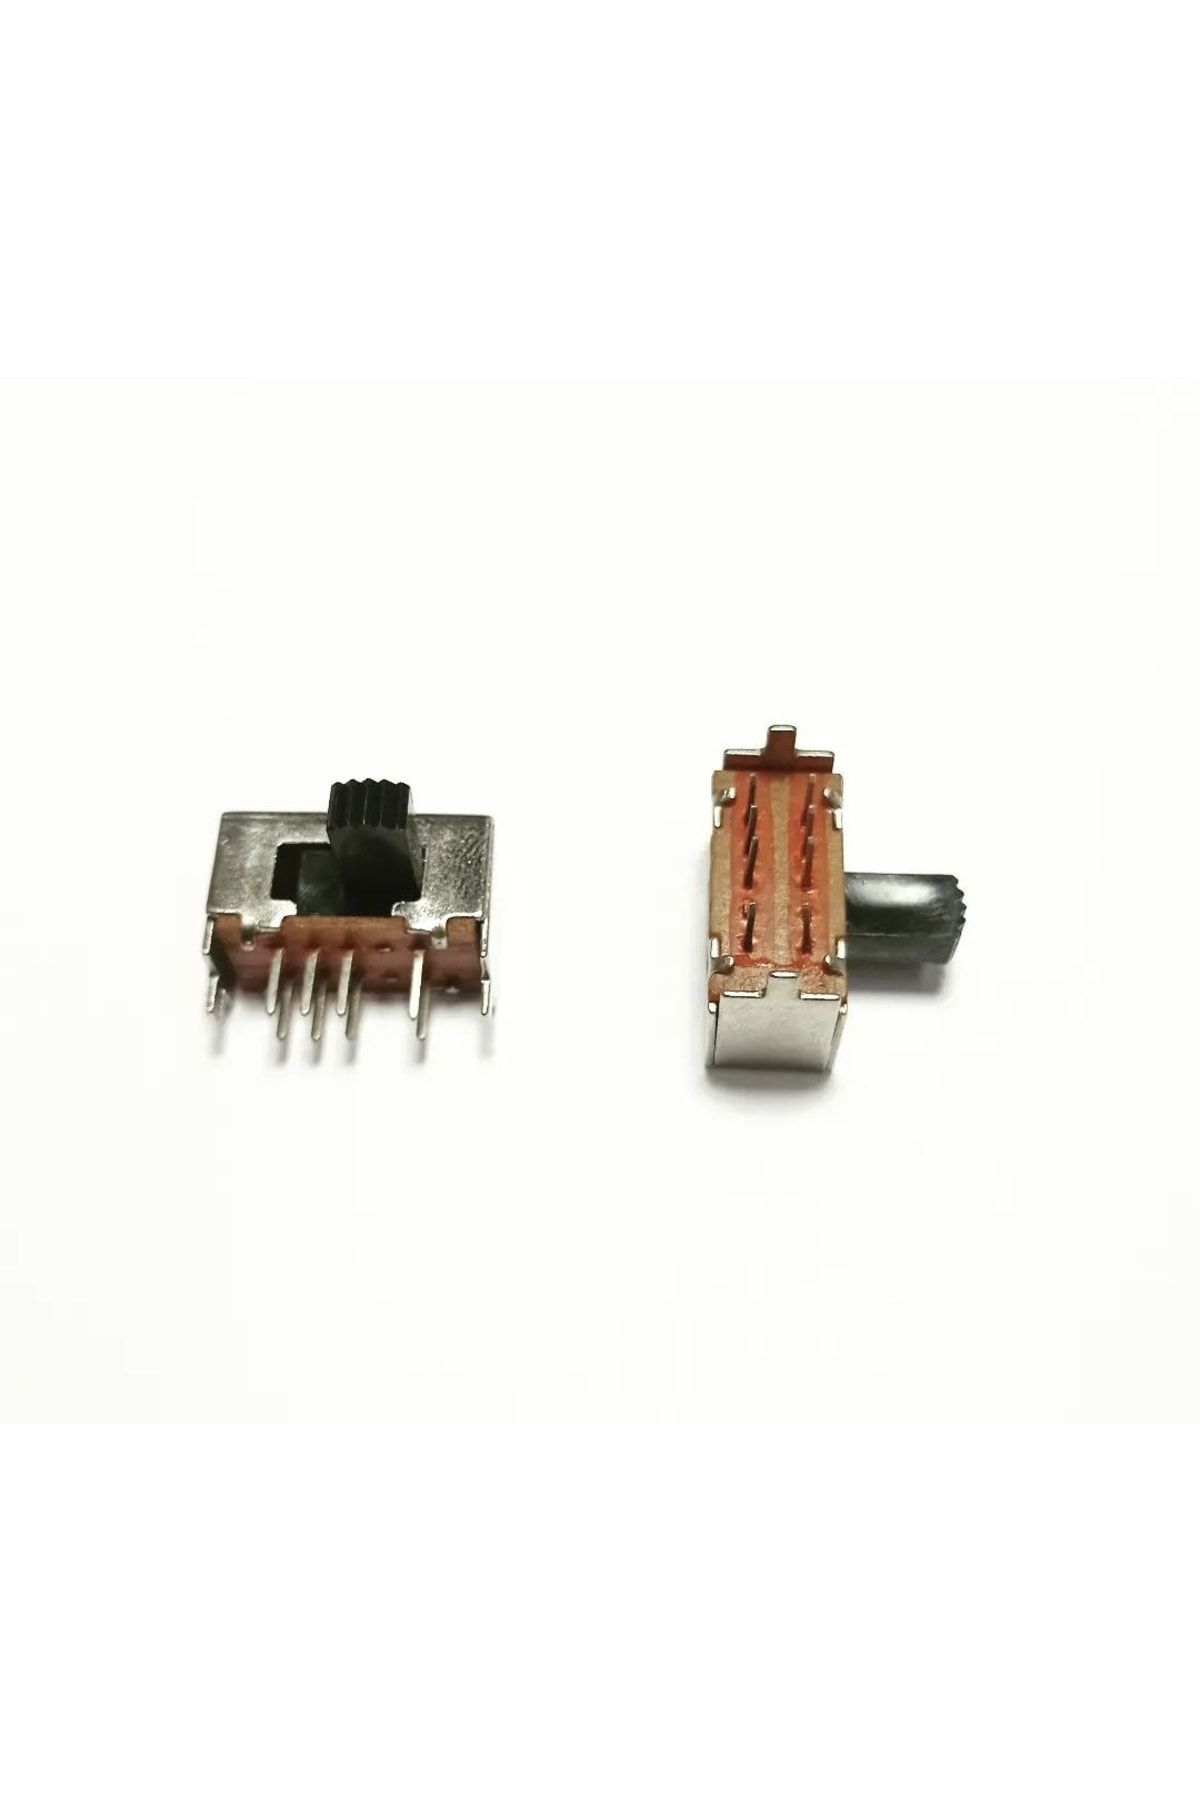 8 Pin Automotive Amphite Switch / 3 Местоположение - 1 кусок